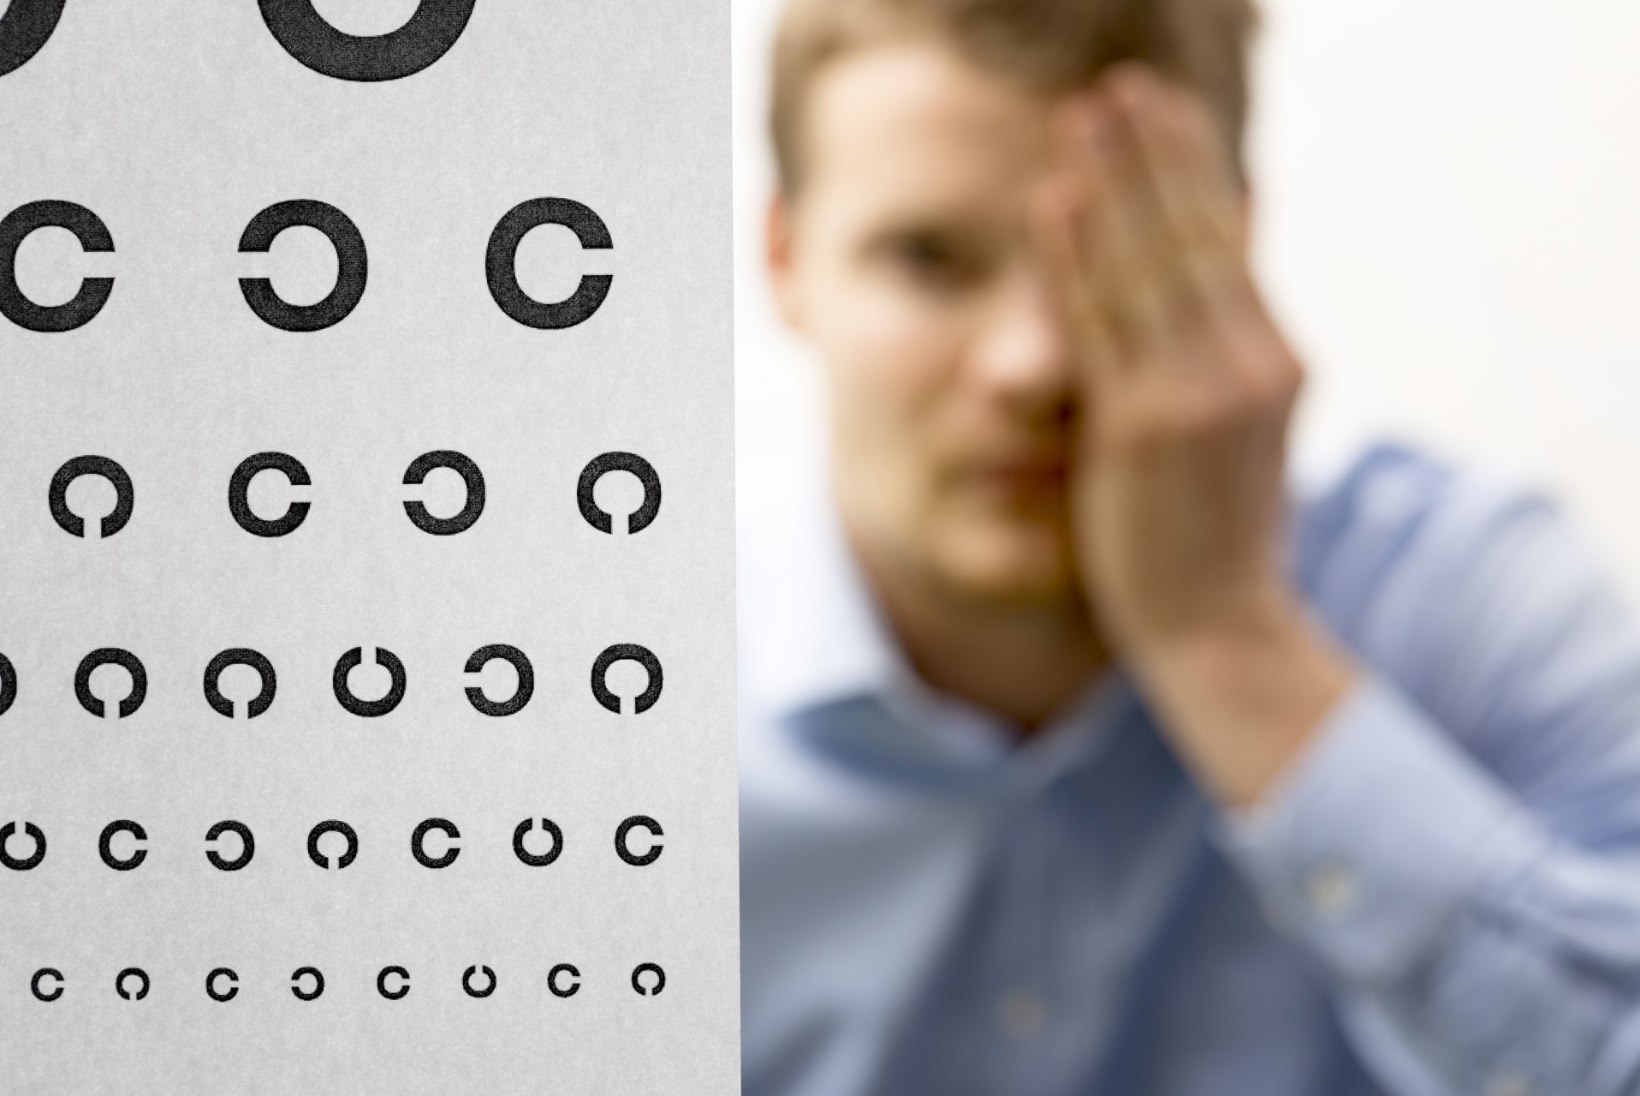 Uuring: igal teisel üle 40aastasel eestlasel on probleemid silmanägemisega